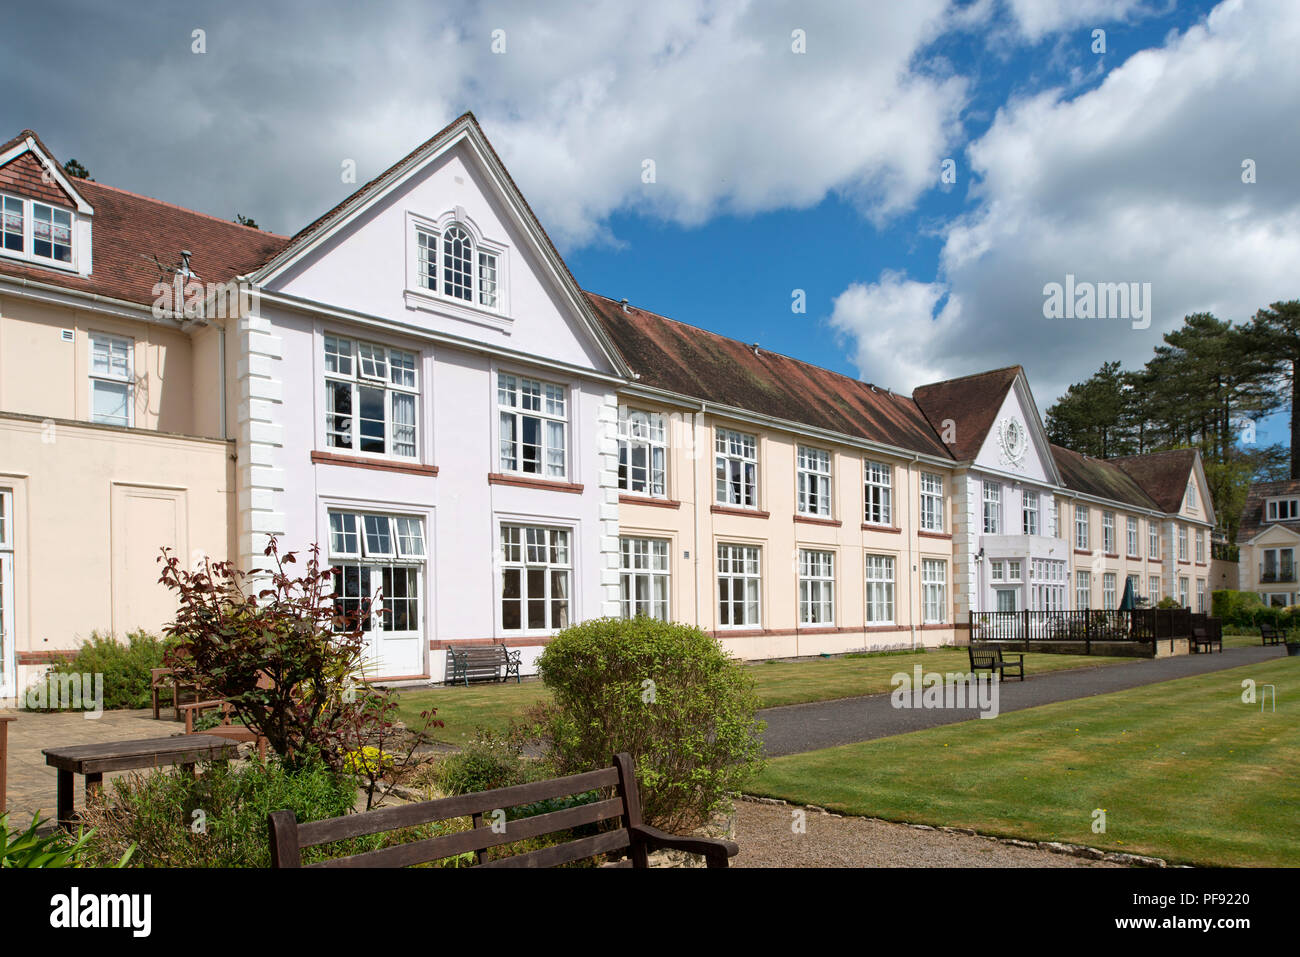 Avonpark Village, il pensionamento e case di cura, Winsley, bagno, Somerset, Regno Unito, che mostrano tipiche camere da letto, soggiorno e sala da pranzo, giardini Foto Stock